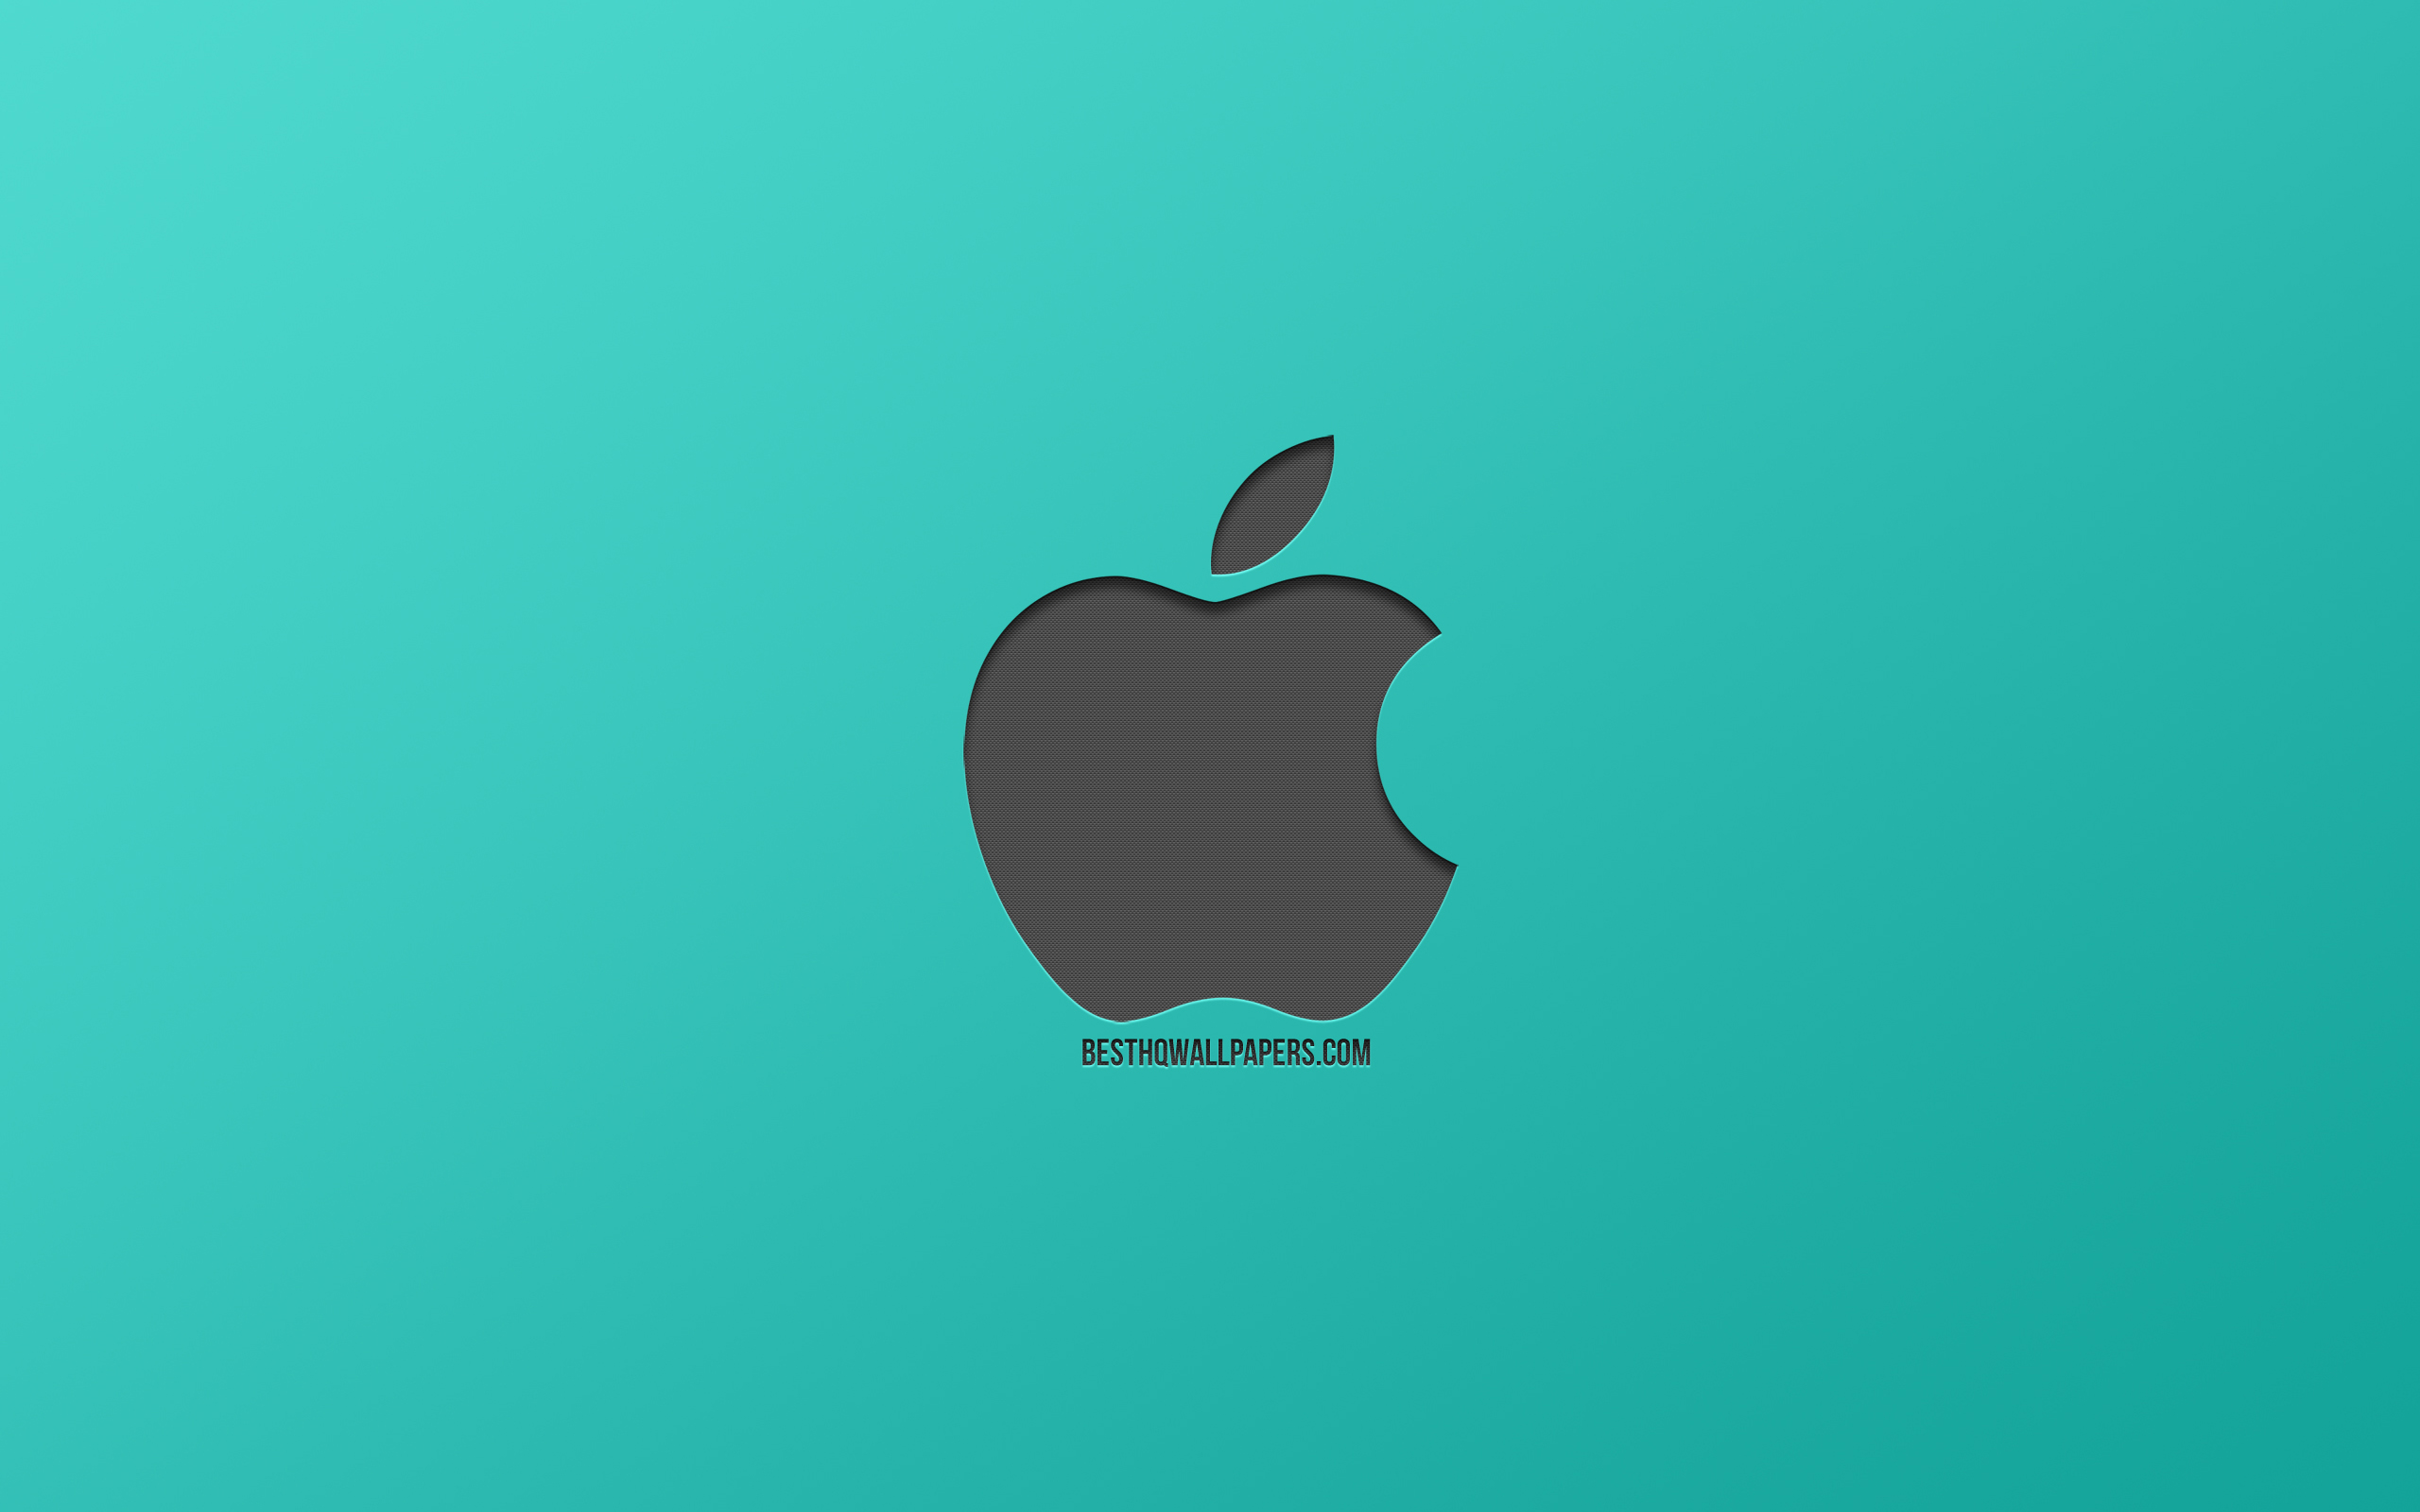 ダウンロード画像 Apple ロゴ ターコイズブルーの背景 お洒落な芸術 押しメタリックグレーロゴ エンブレム Appleのロゴ 画面の解像度 2560x1600 壁紙デスクトップ上